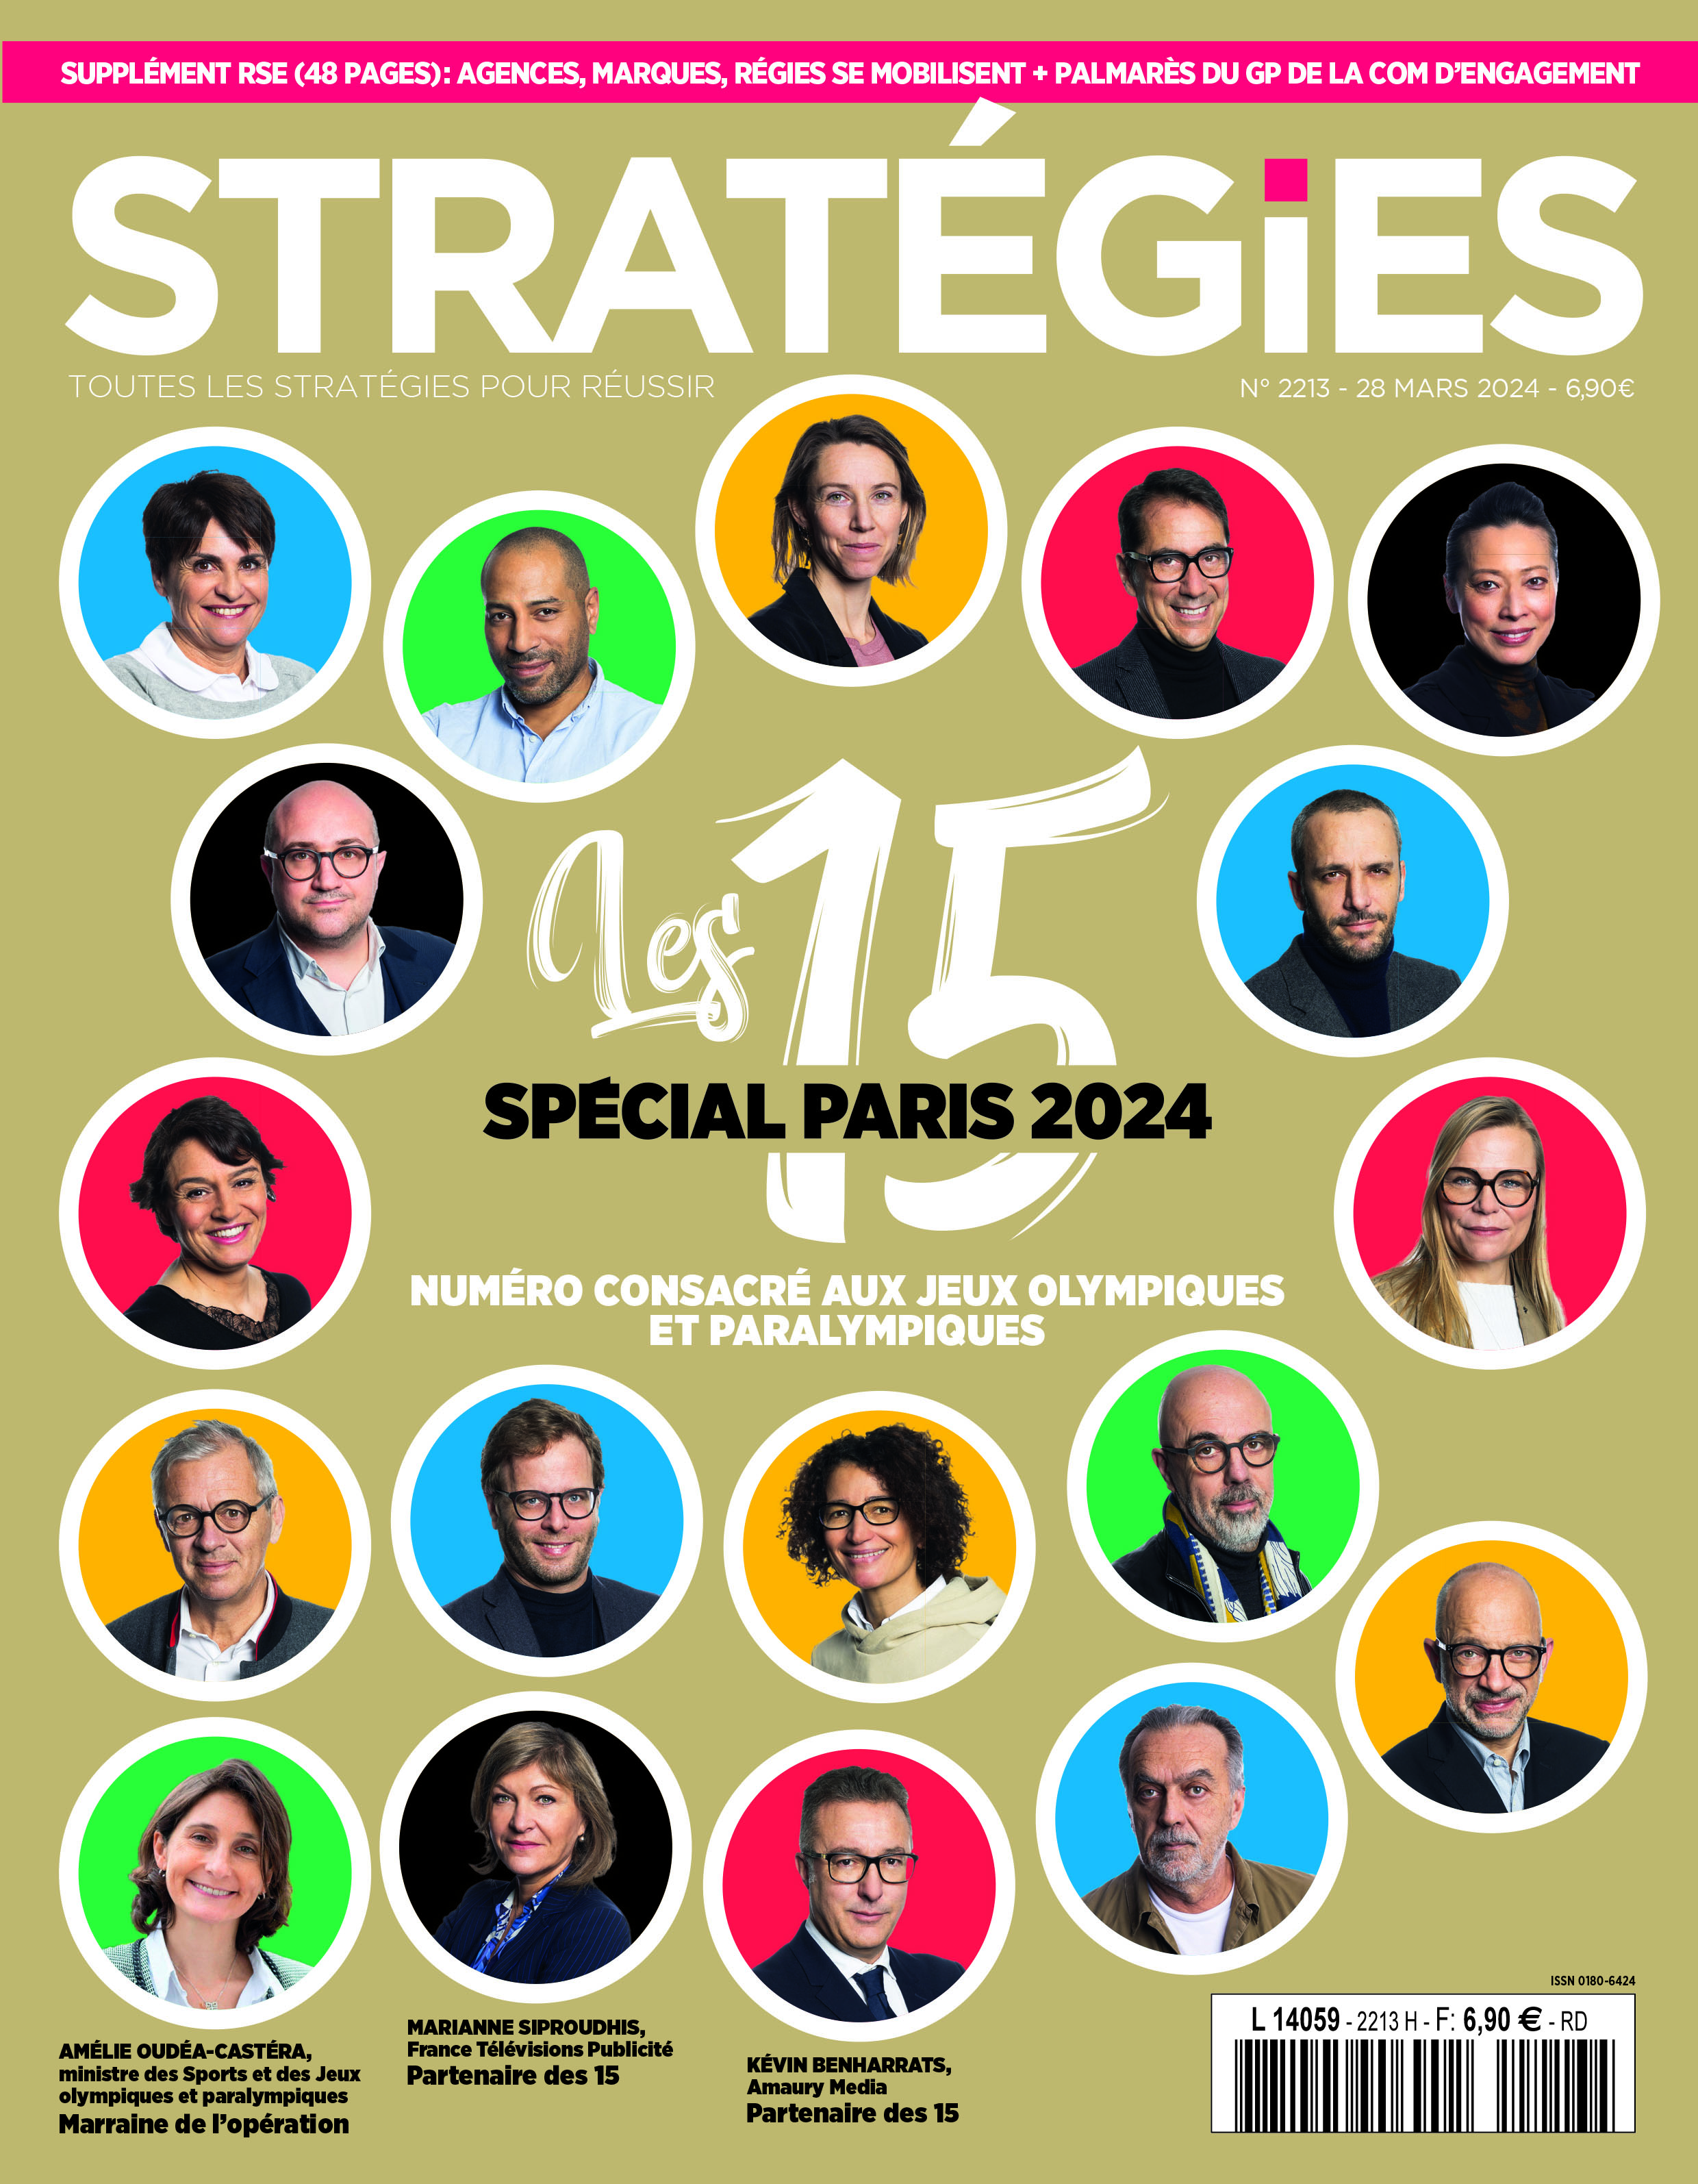 Couverture du magazine Stratégies n°2213 : "Les 15 spécial Paris 2024"